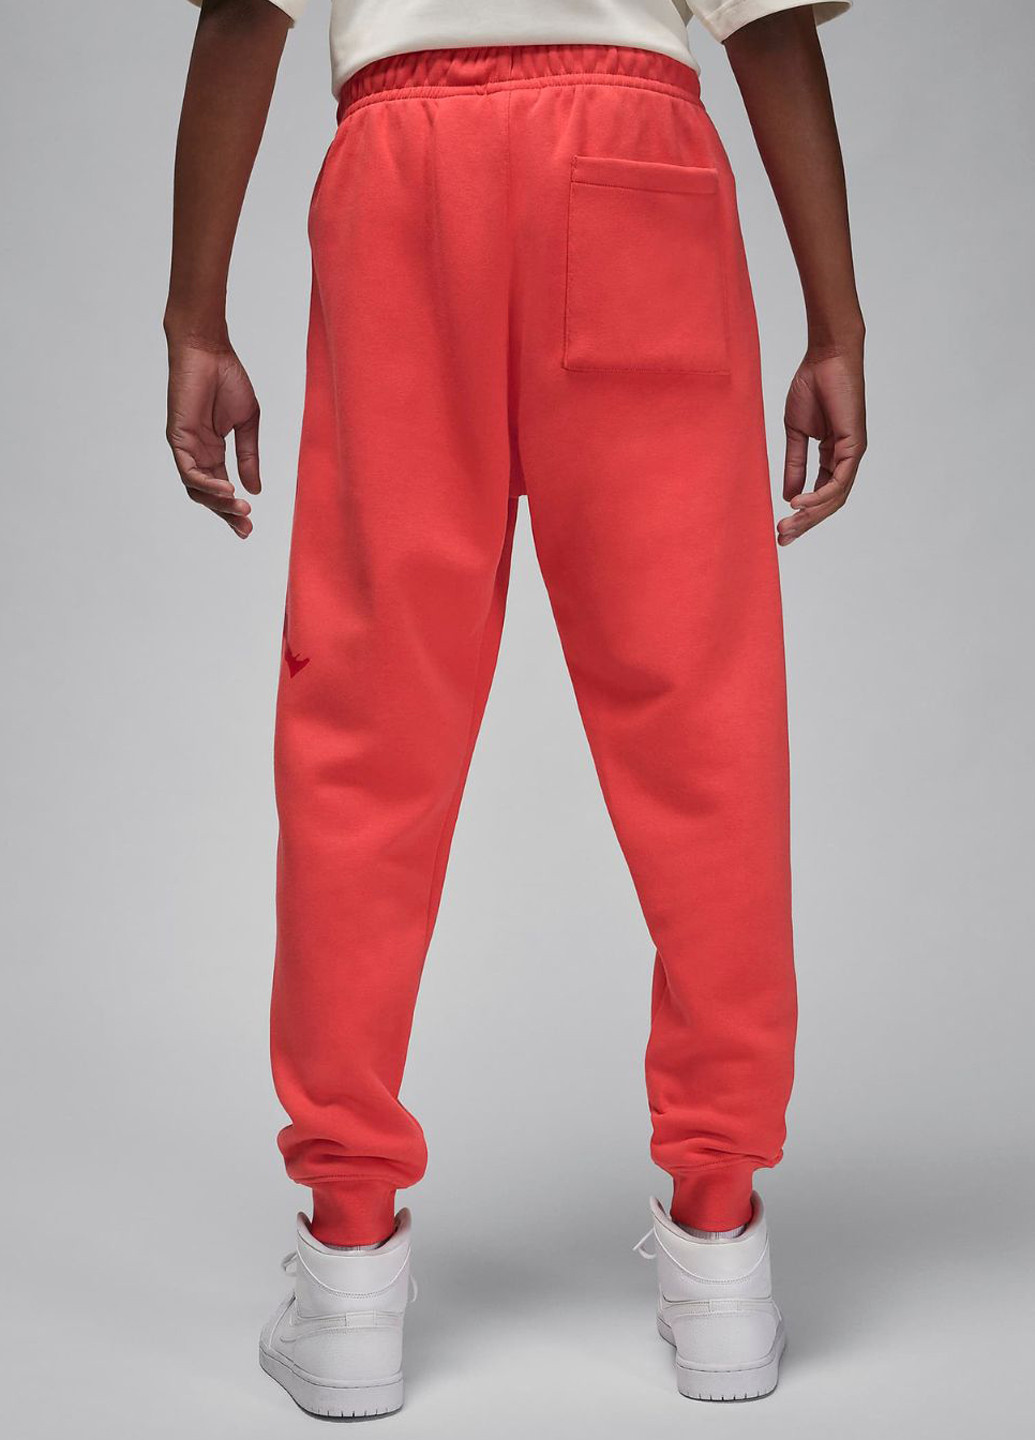 Розовые кэжуал демисезонные джоггеры брюки Jordan